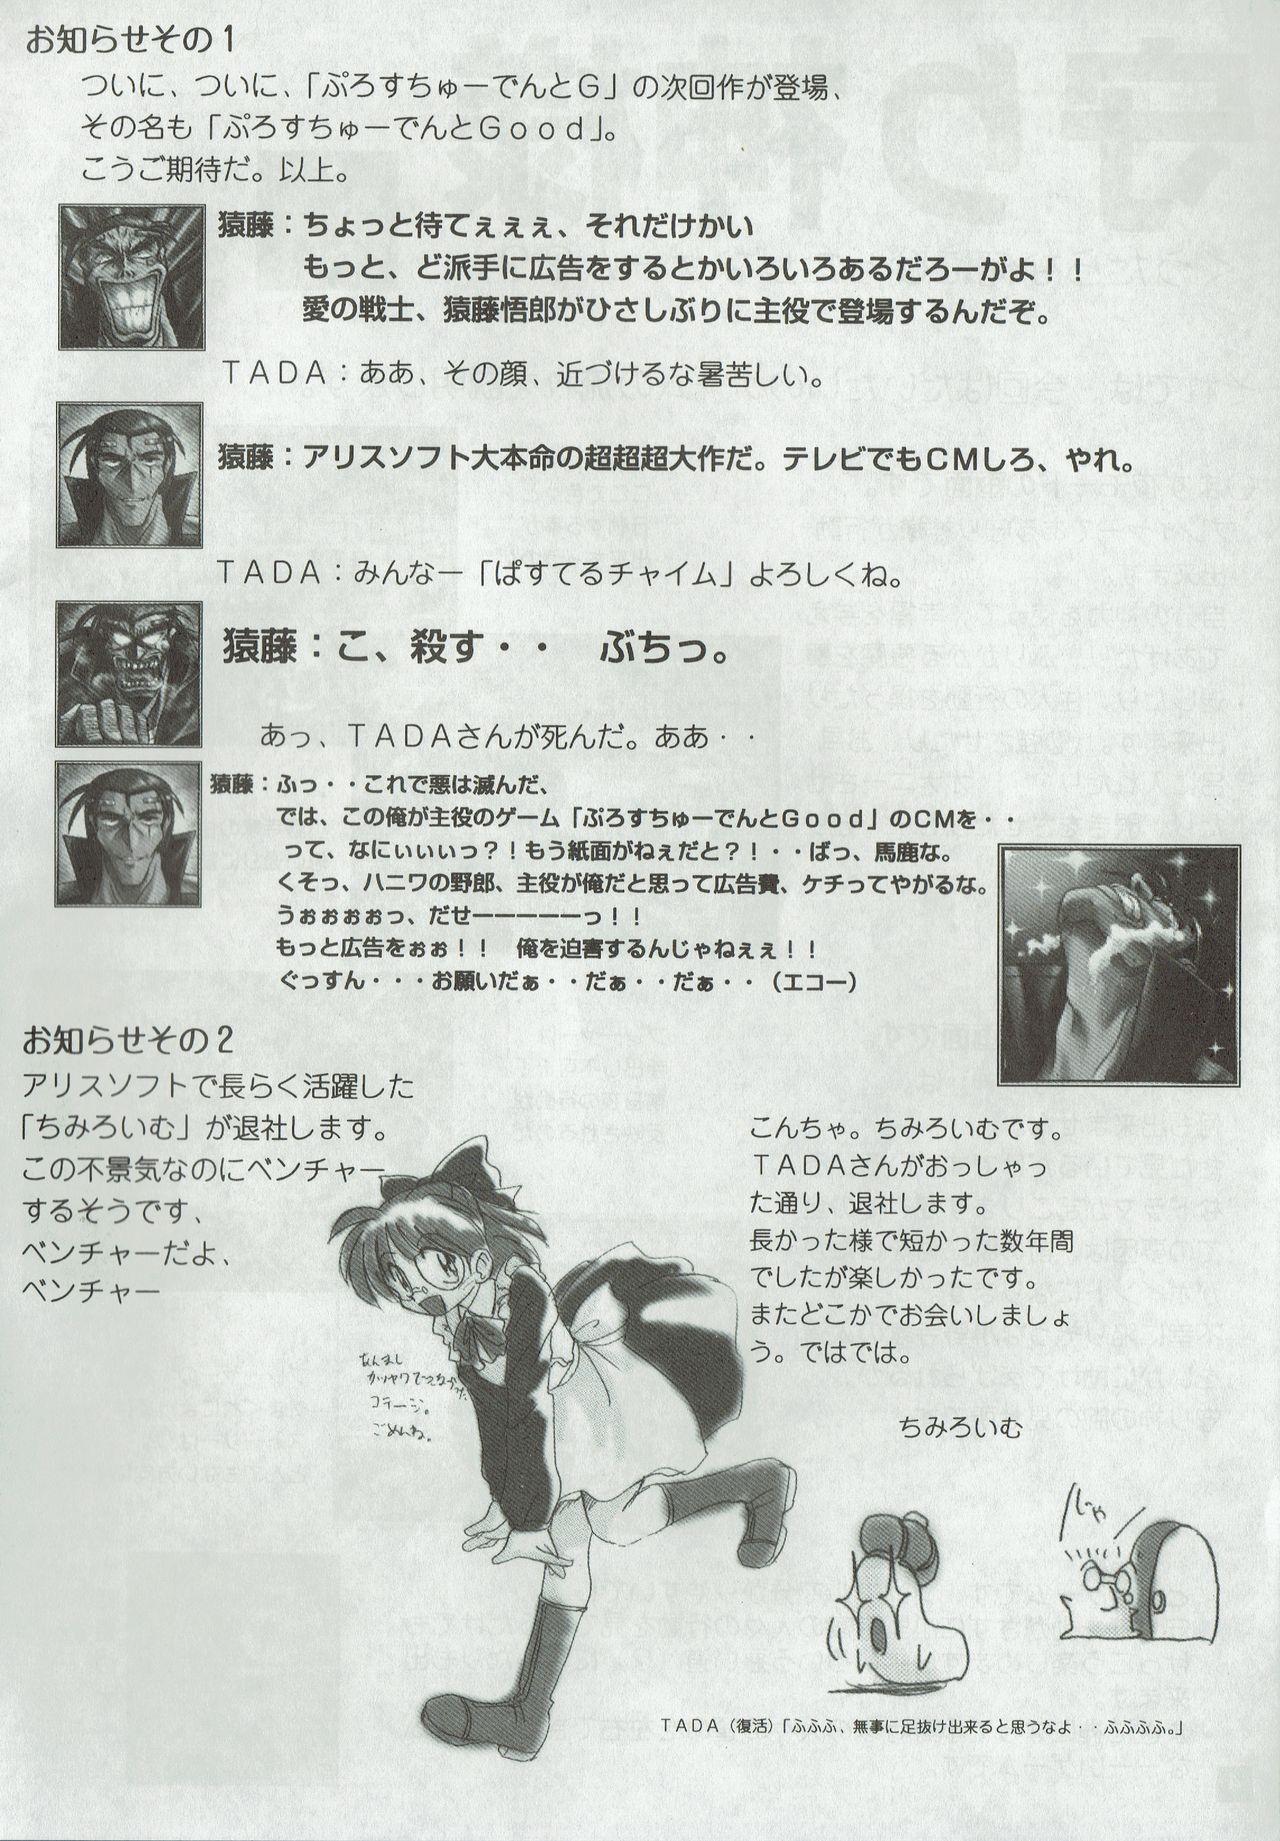 Arisu no Denchi Bakudan Vol. 01 2